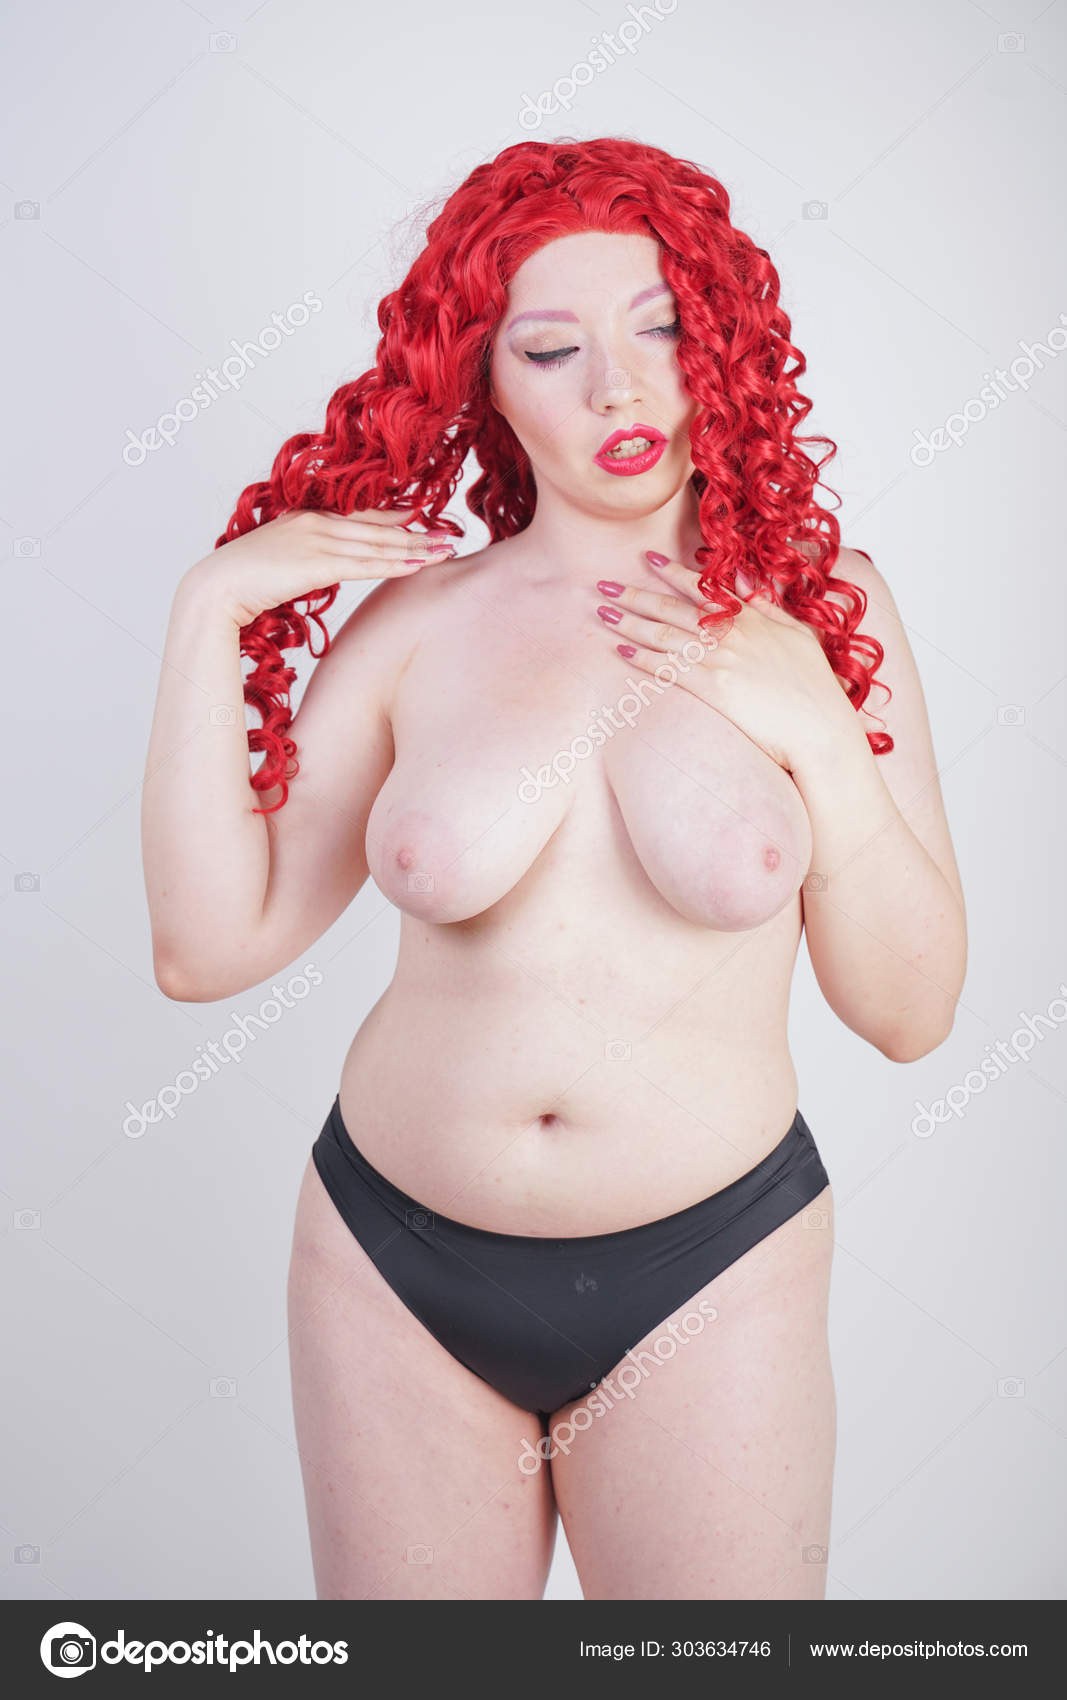 https://st4n.depositphotos.com/1091519/30363/i/1600/depositphotos_303634746-stock-photo-young-beautiful-girl-posing-nude.jpg